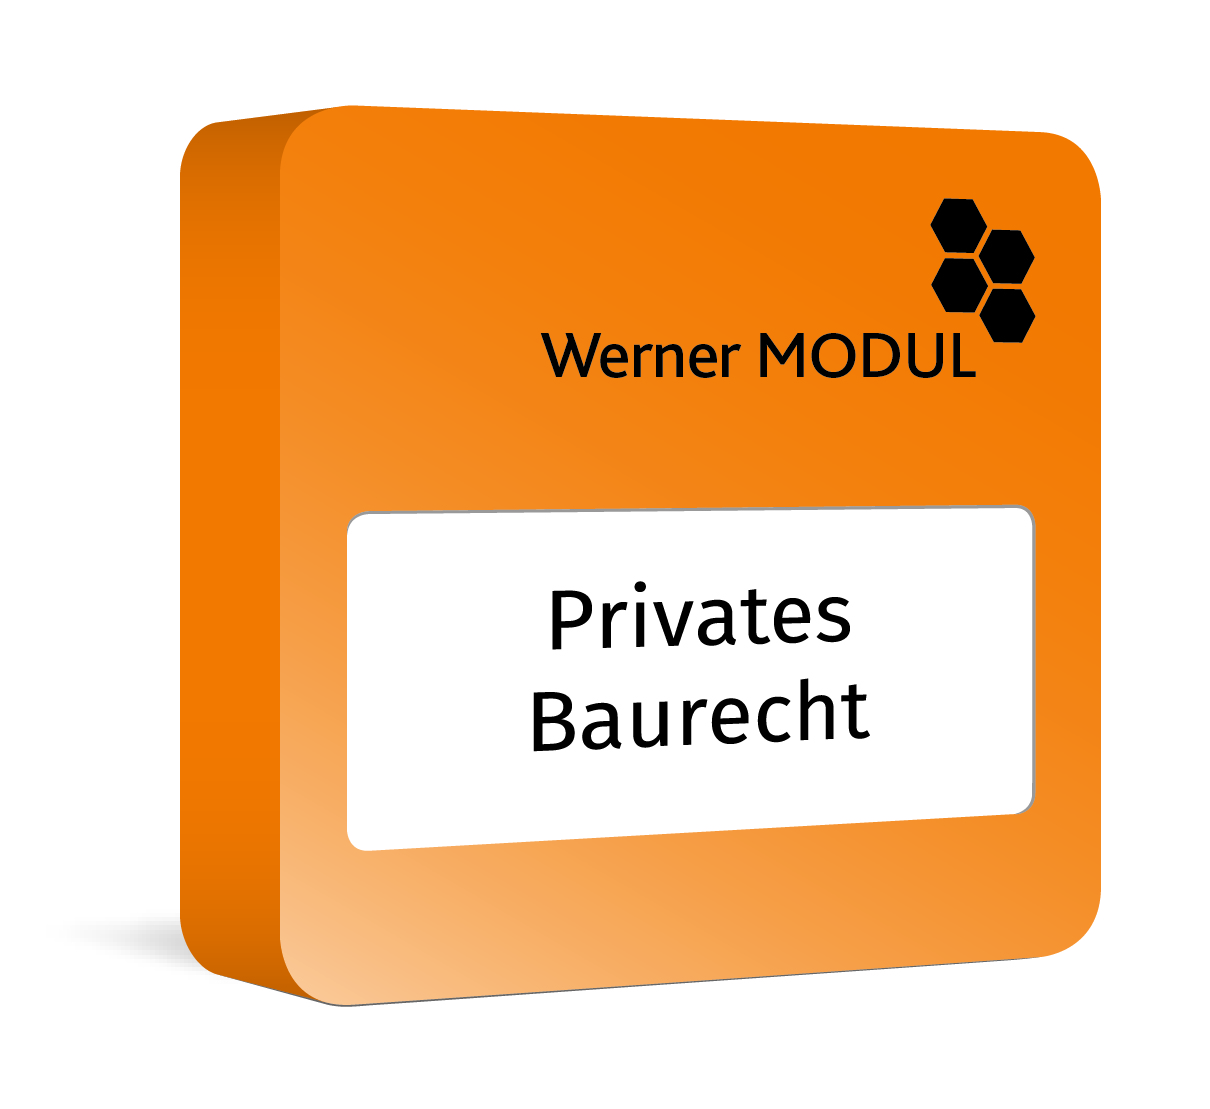 Modul Werner Privates Baurecht